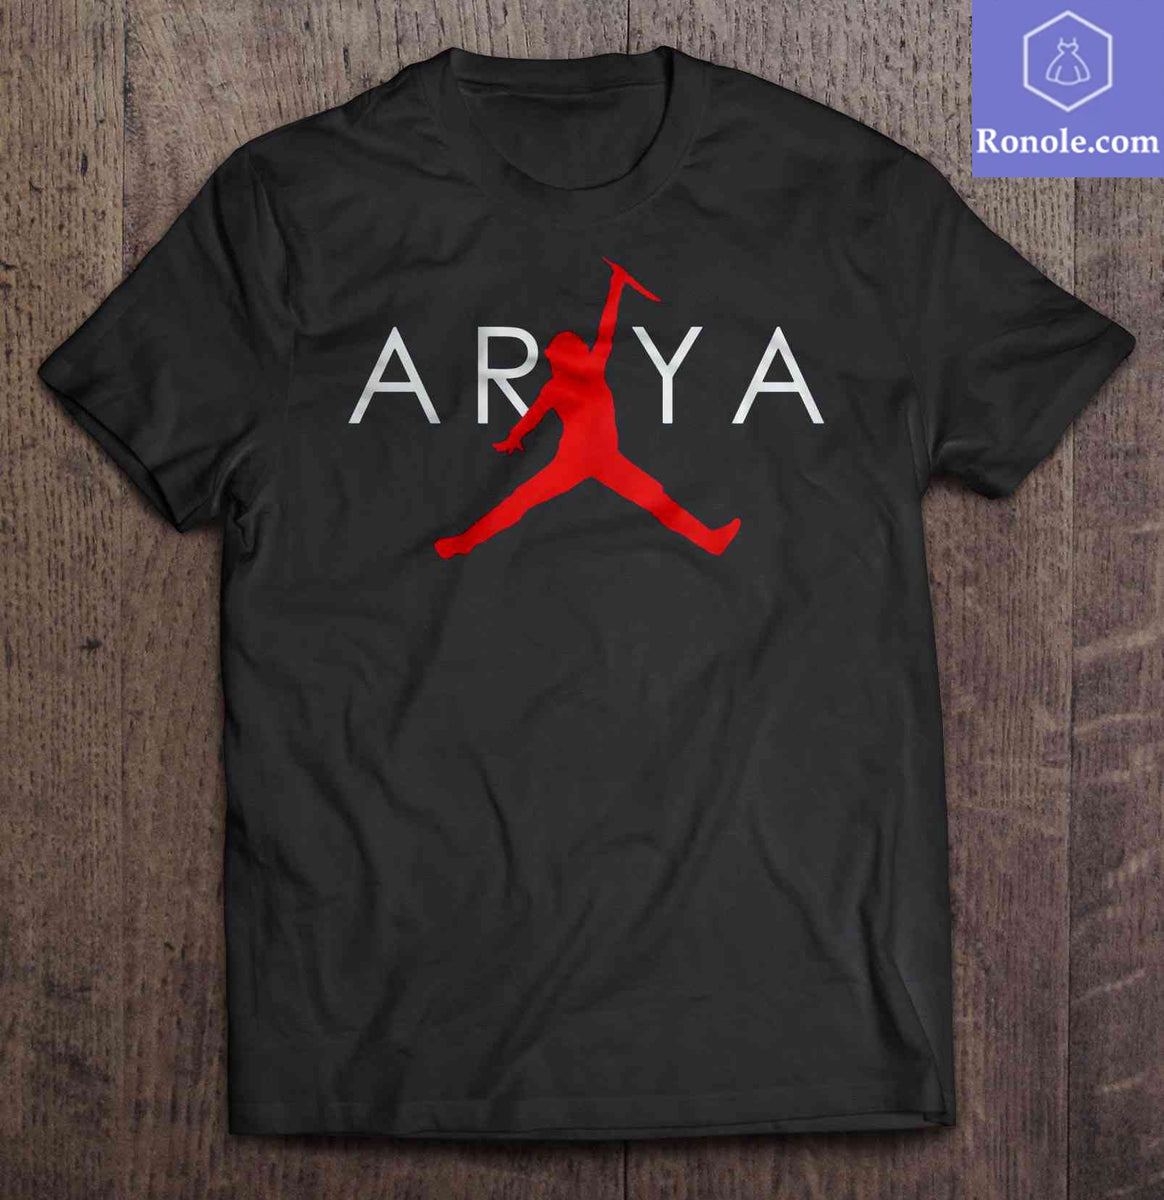 arya air jordan shirt